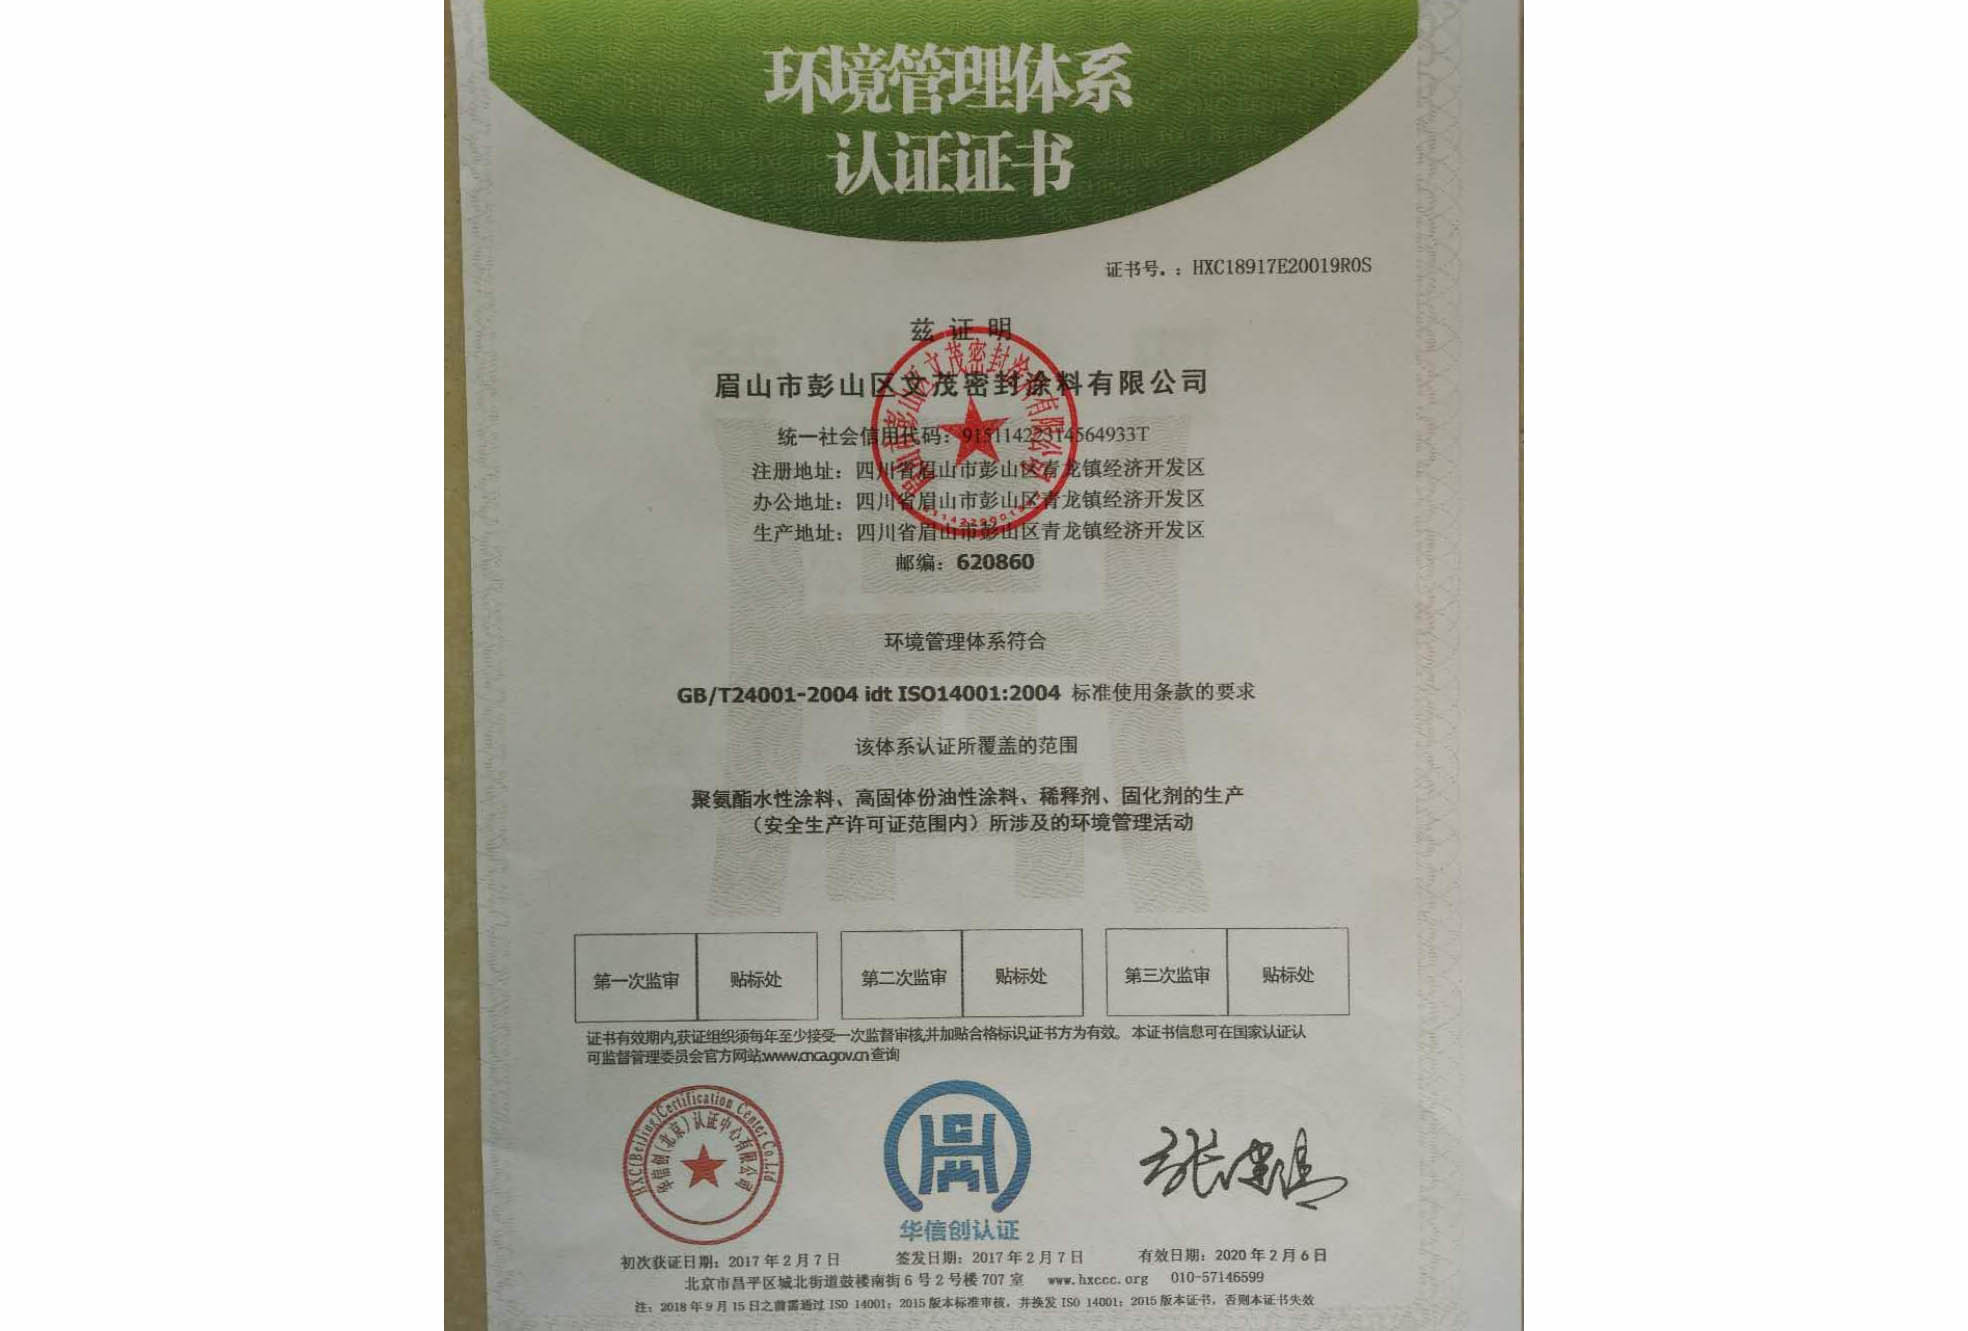 成都工業涂料公司環境管理體系認證證書